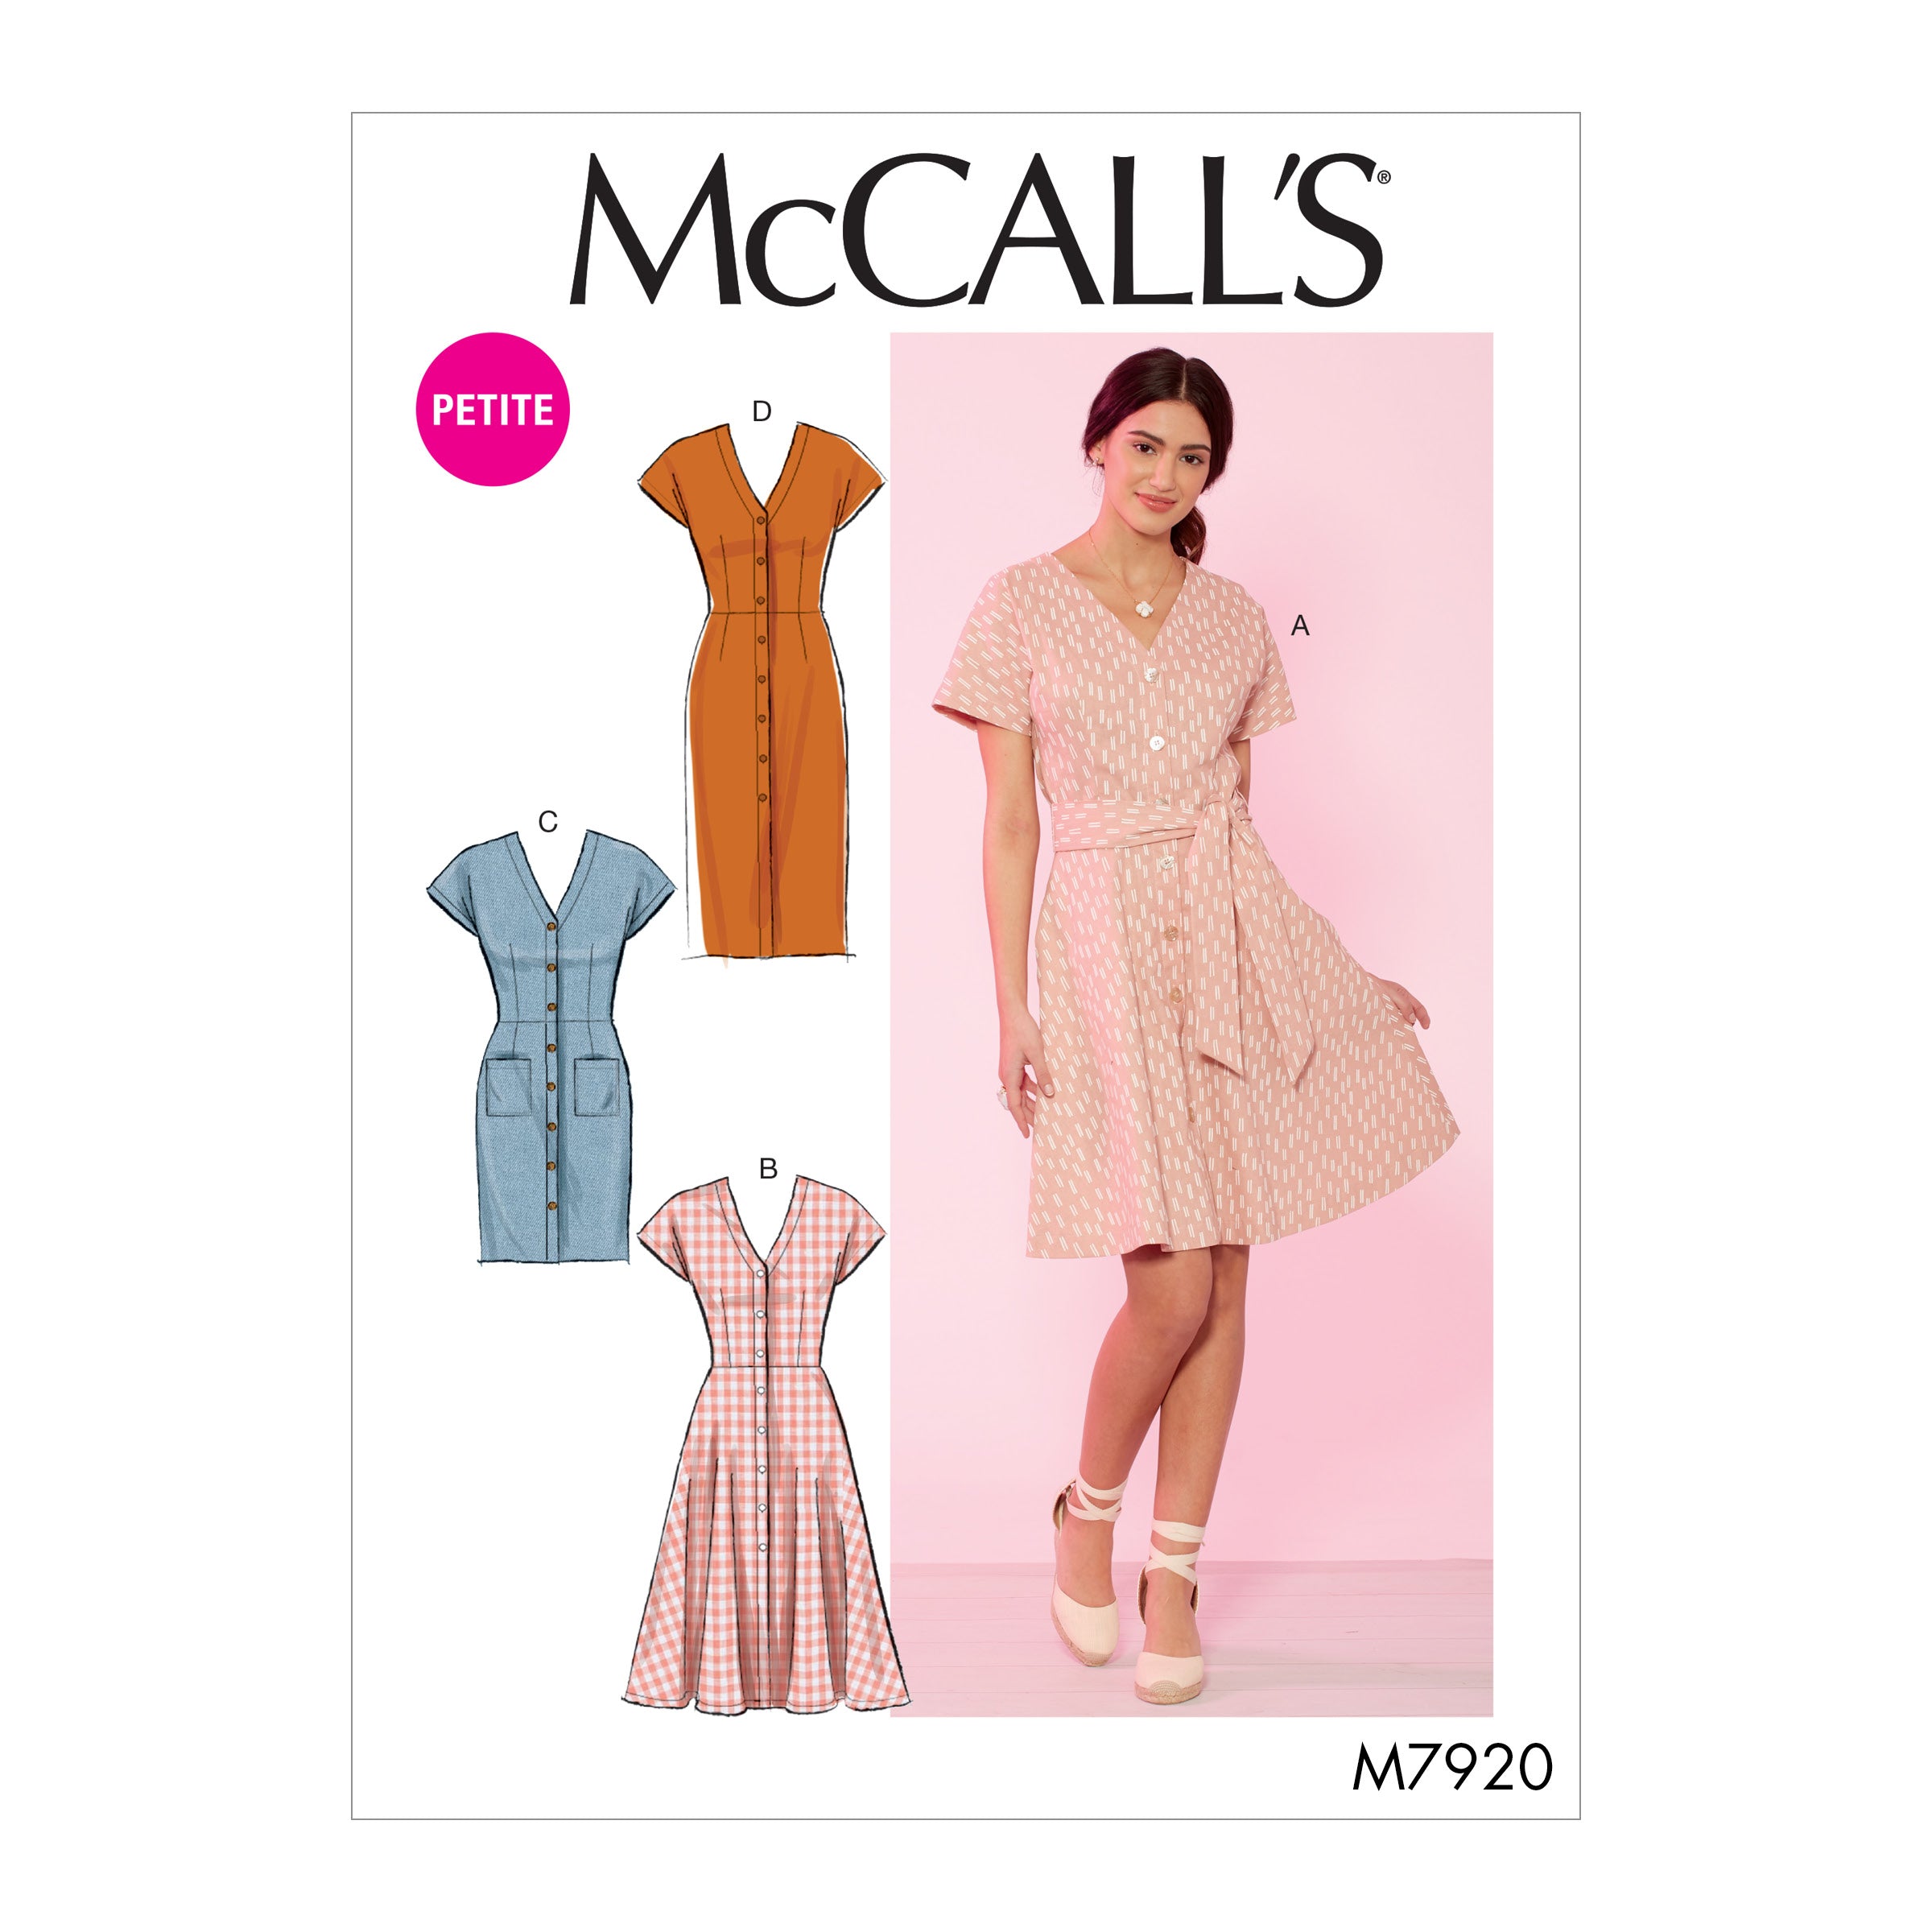 McCalls Dresses M7920